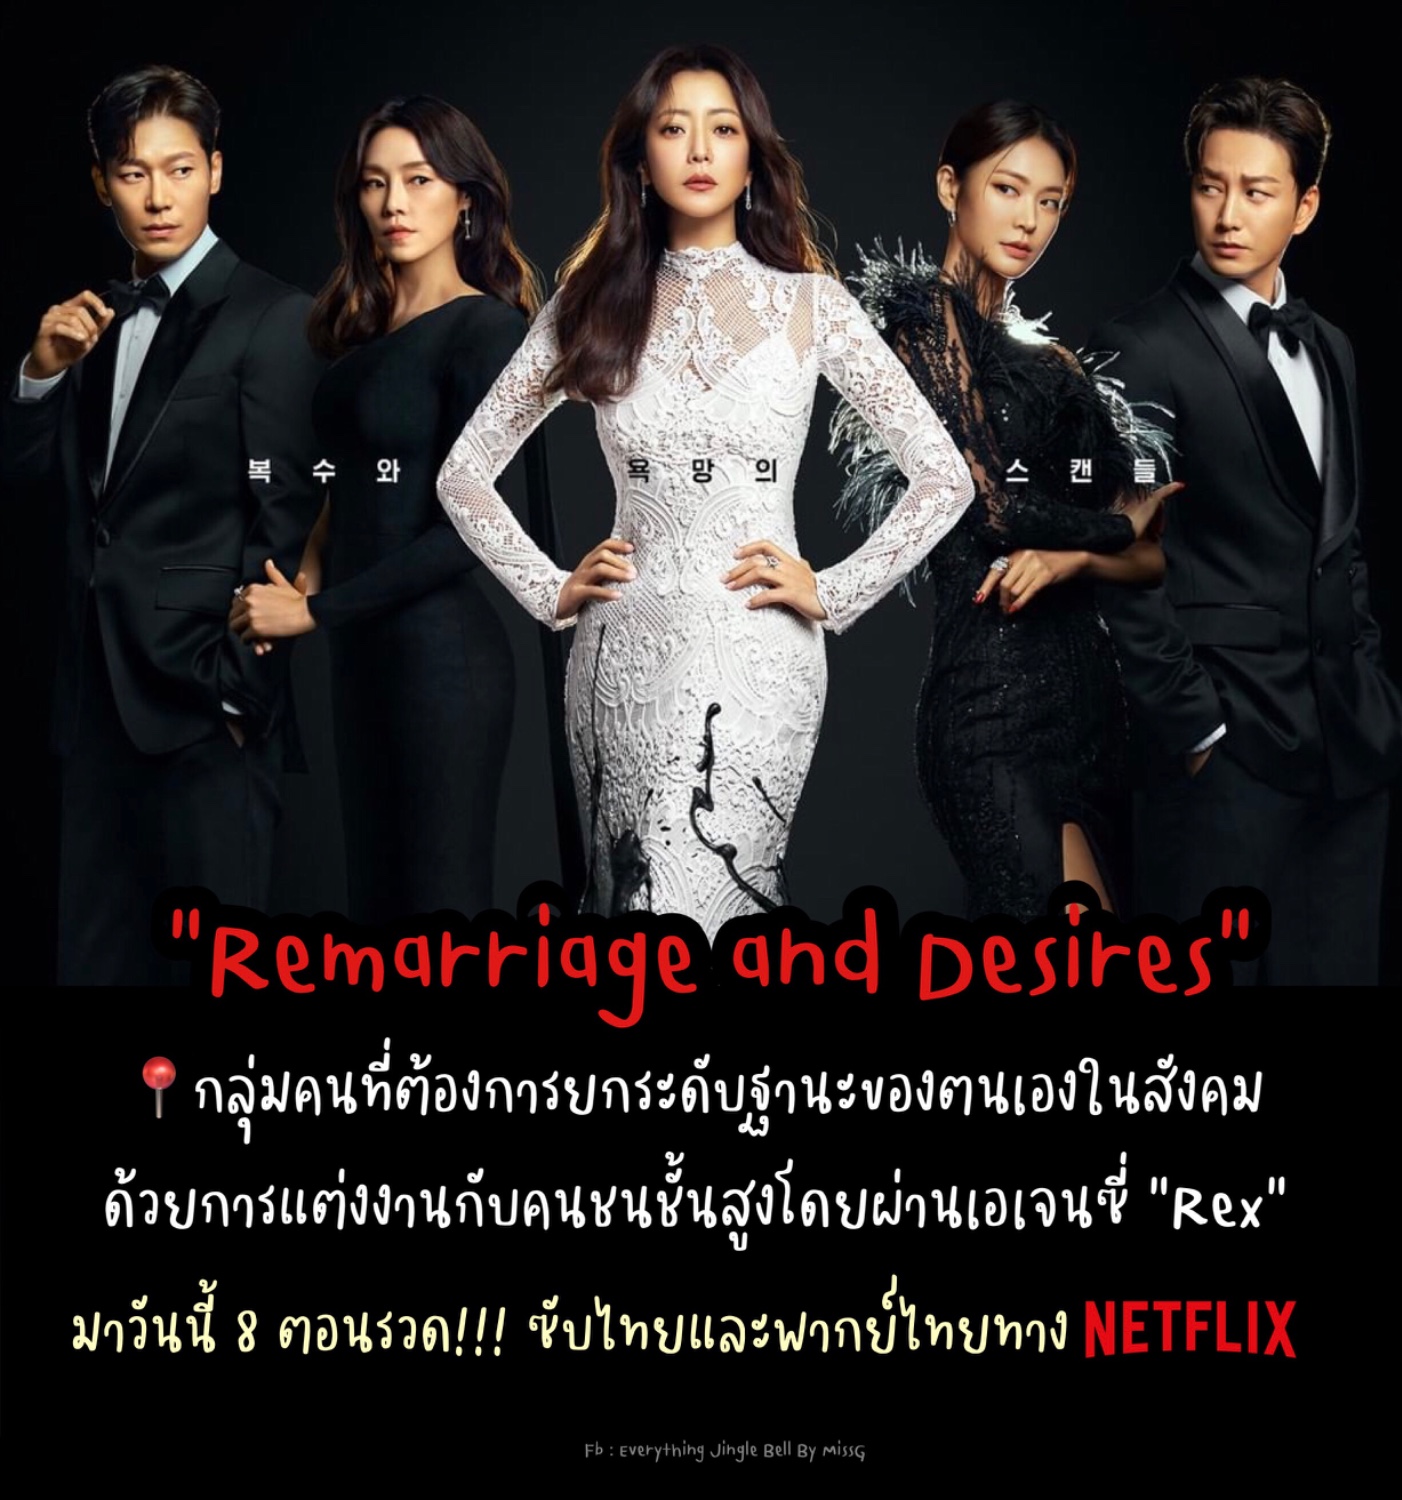 แนะนำซีรีส์ใหม่เข้า Netflix วันนี้!!! “Remarriage And Desires” - Pantip